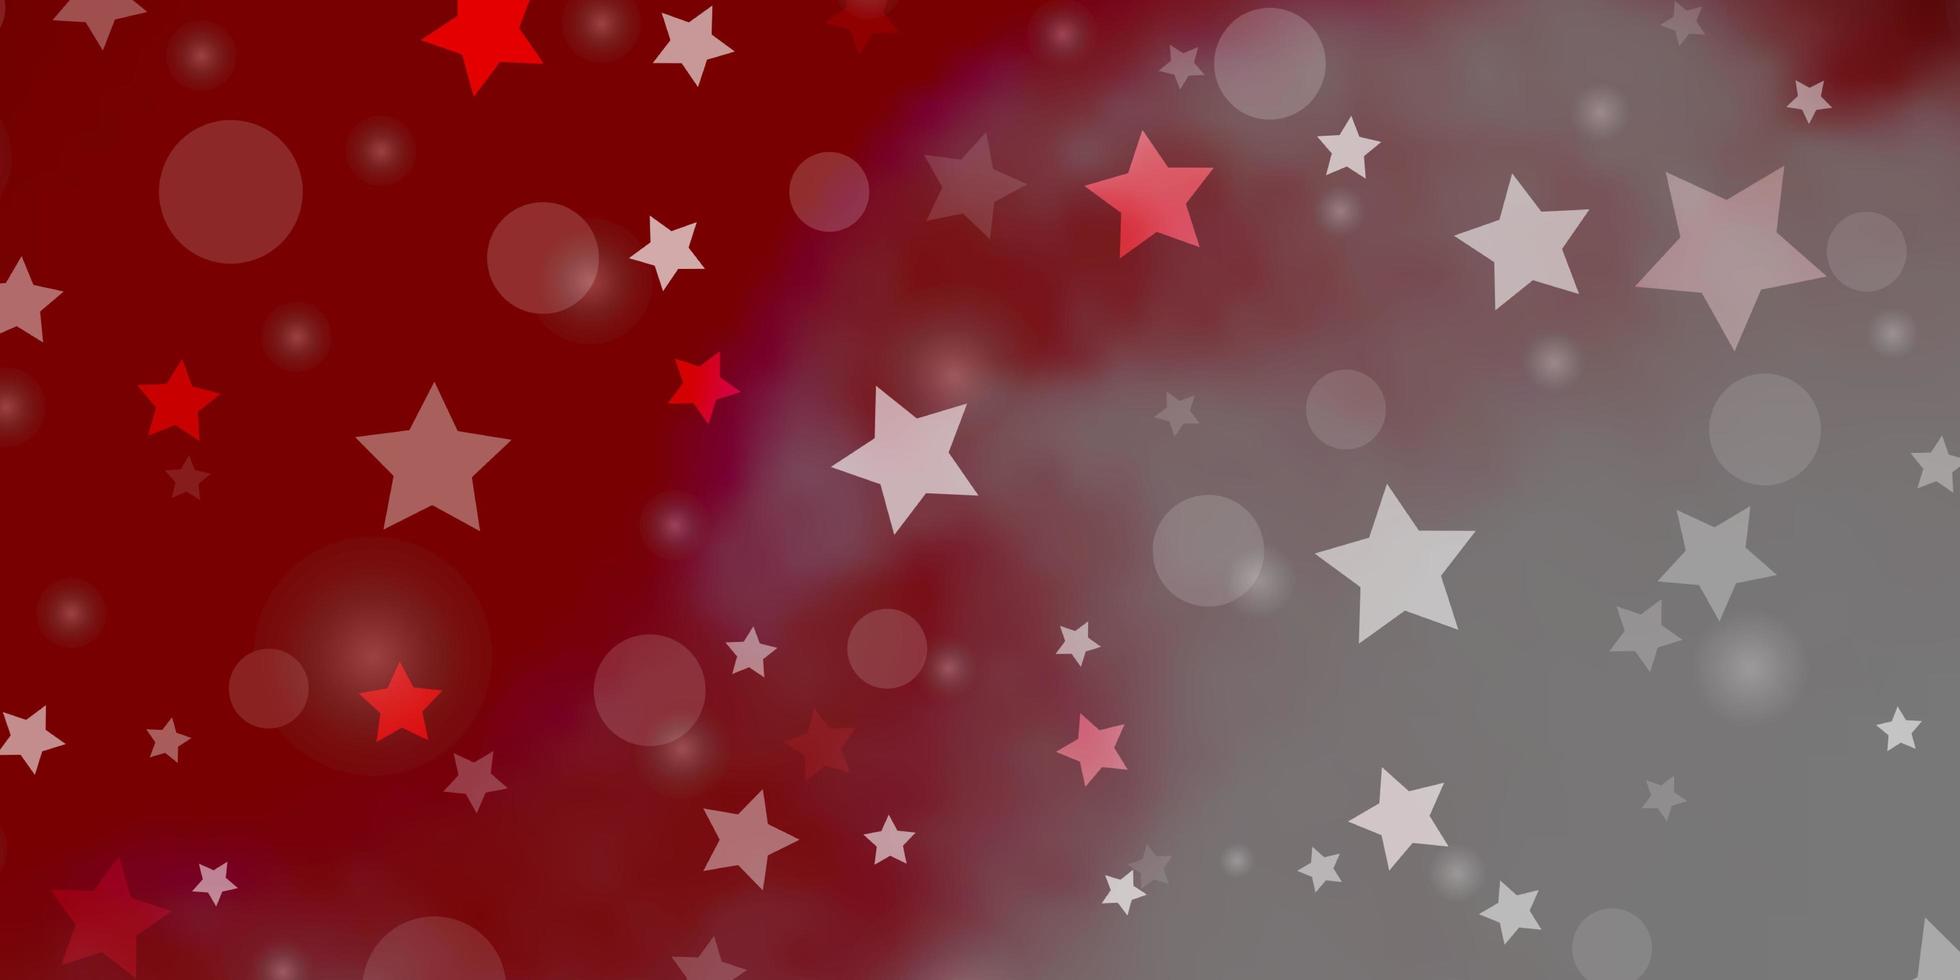 Fondo de vector rojo claro con círculos, estrellas. diseño abstracto en estilo degradado con burbujas, estrellas. plantilla para tarjetas de visita, sitios web.